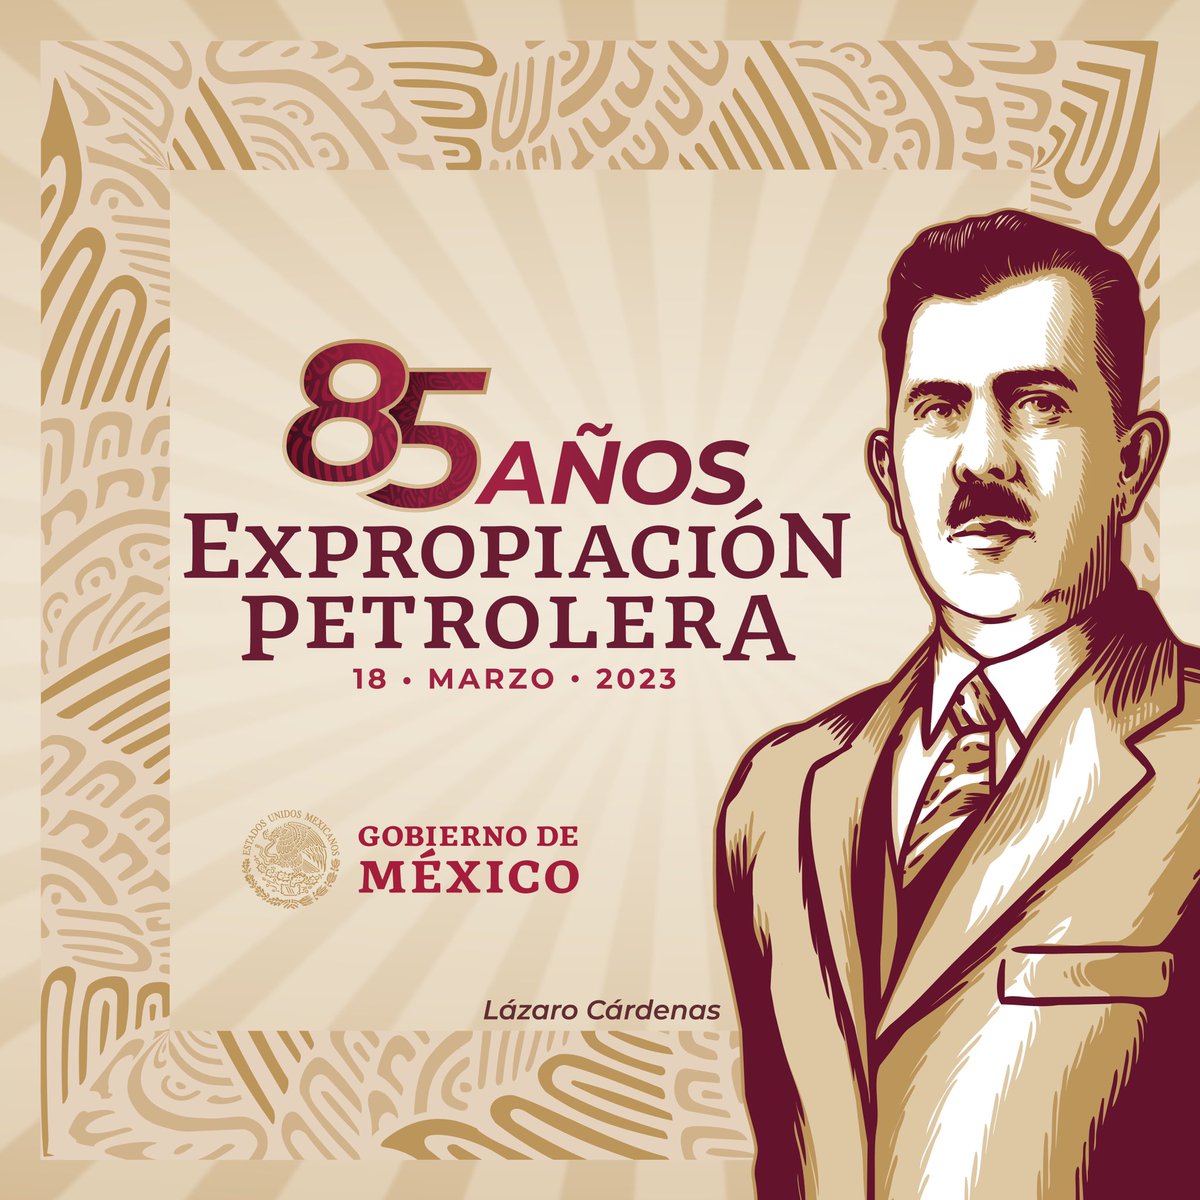 Hoy conmemoramos el 85 aniversario de la Expropiación Petrolera 

#PorElRescateDeLaSoberanía